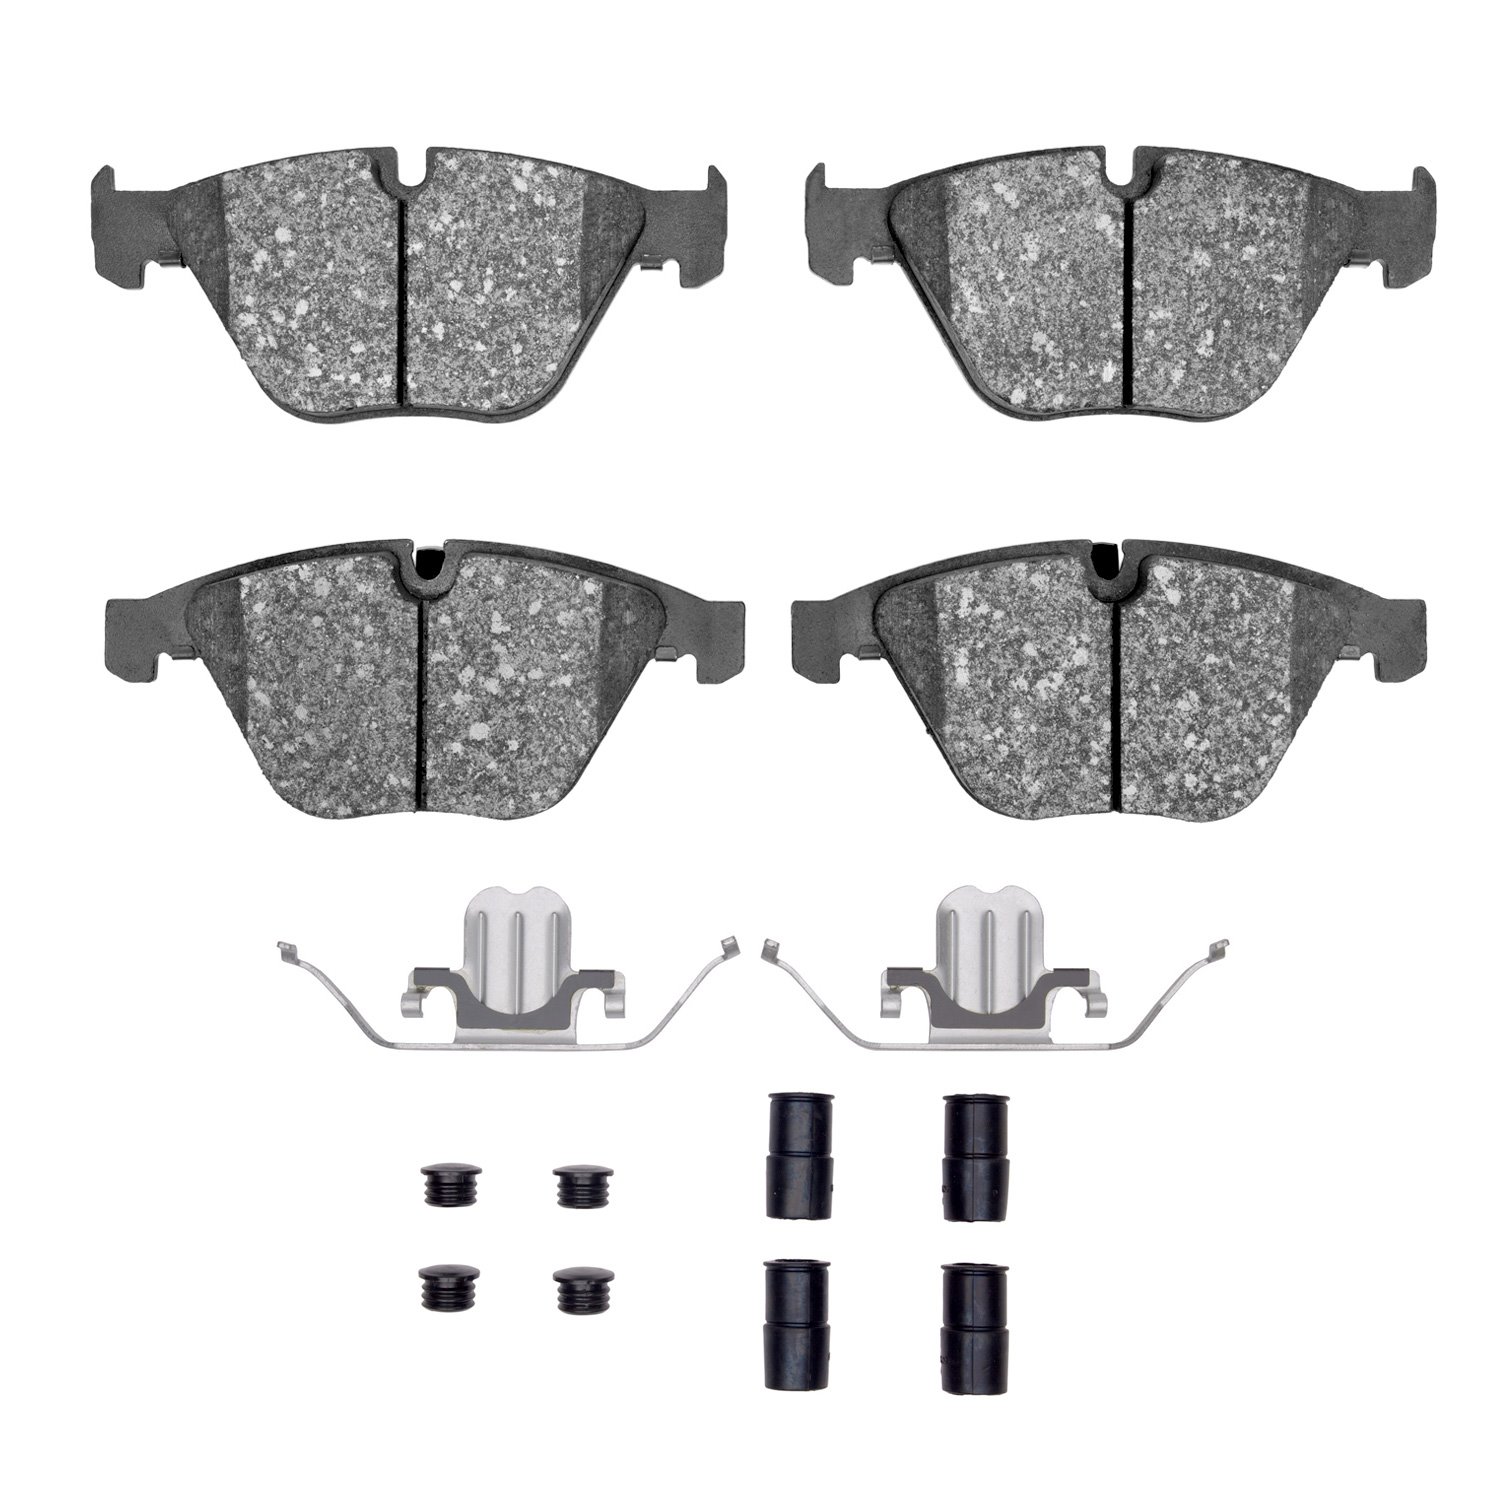 Optimum OE Brake Pads & Hardware Kit, 2008-2015 BMW, Position: Front